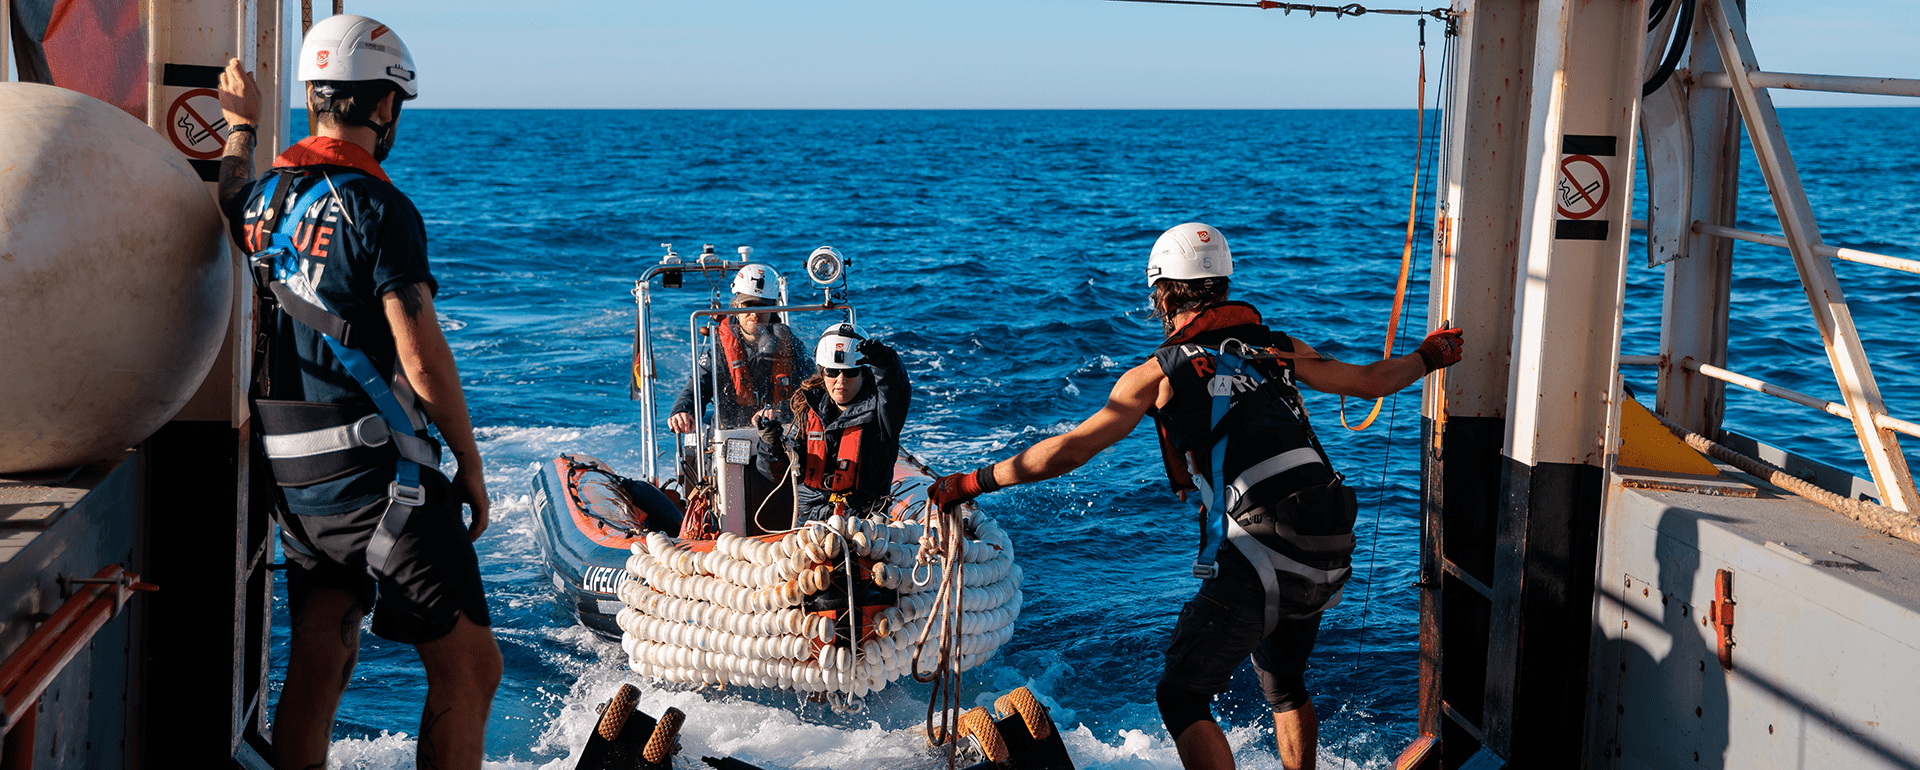 Rhip von Mission Lifeline wird für Rettung im Mittelmeer vorbereitet